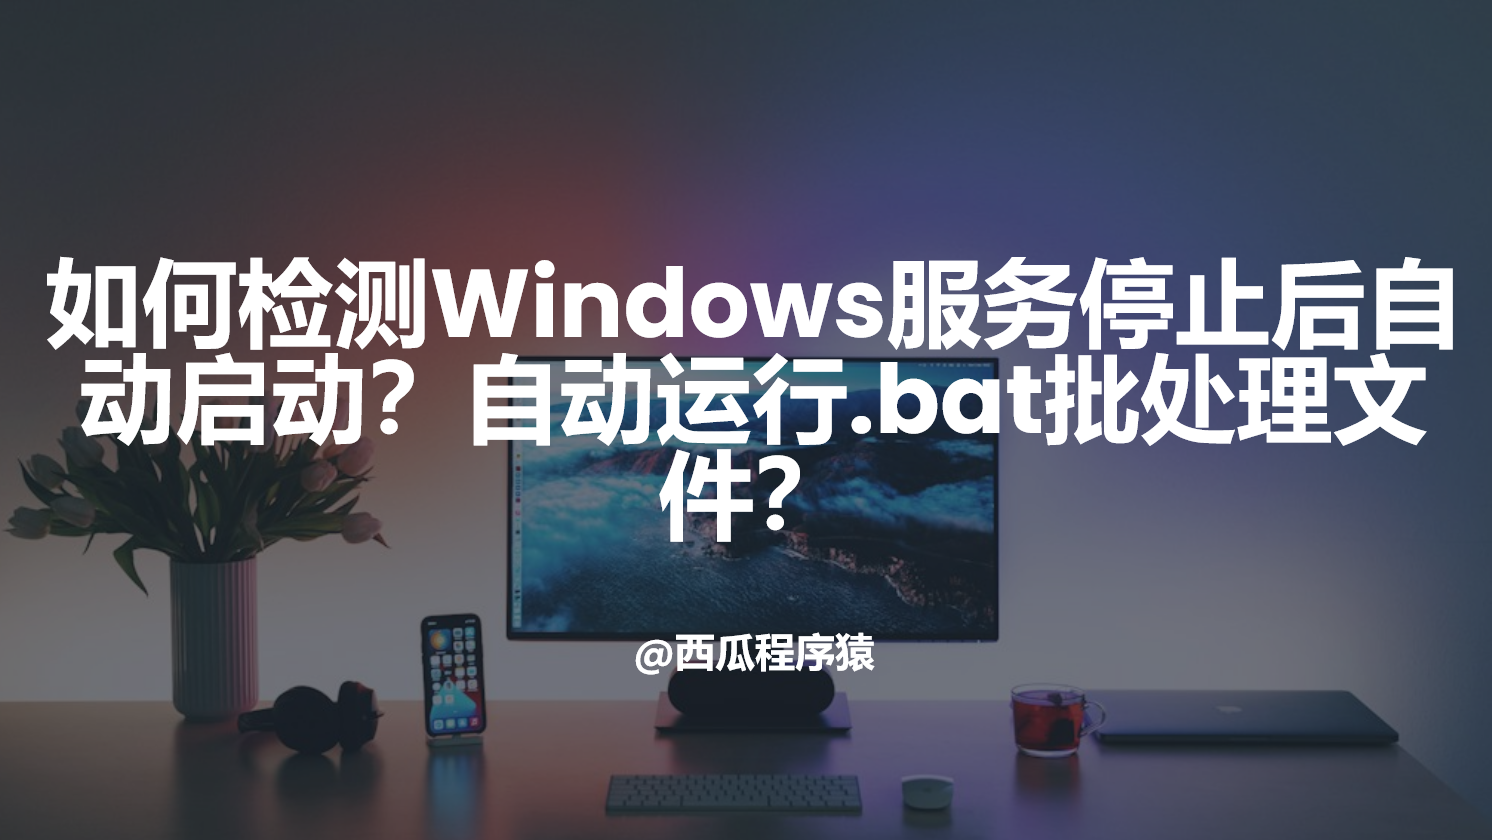 如何检测Windows服务停止后自动启动？自动运行.bat批处理文件？